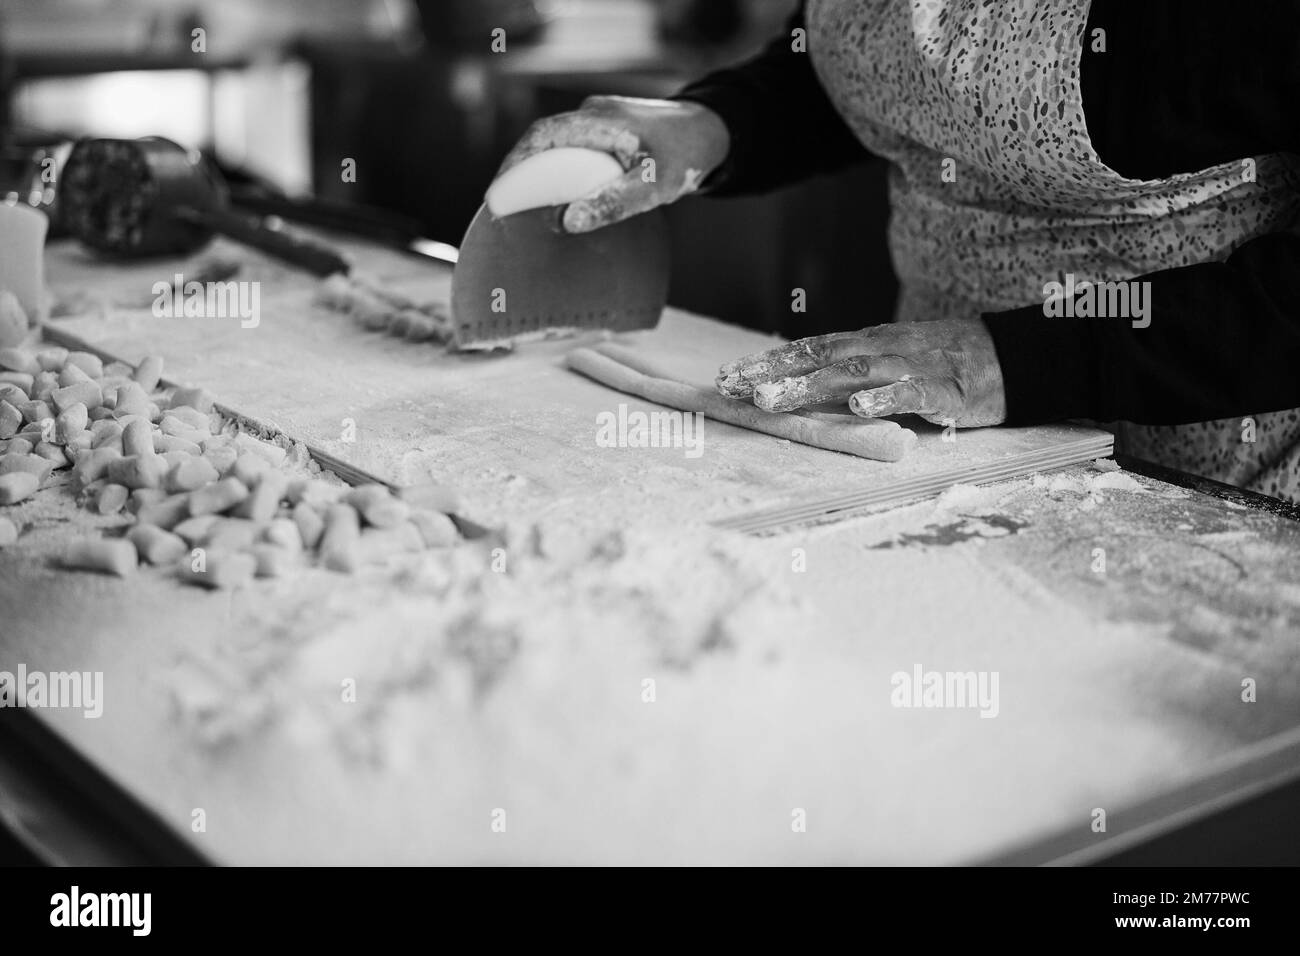 Femme préparant de la pâte pour gnocchi à l'intérieur de l'usine de pâtes - Soft focus sur la main droite - montage noir et blanc Banque D'Images